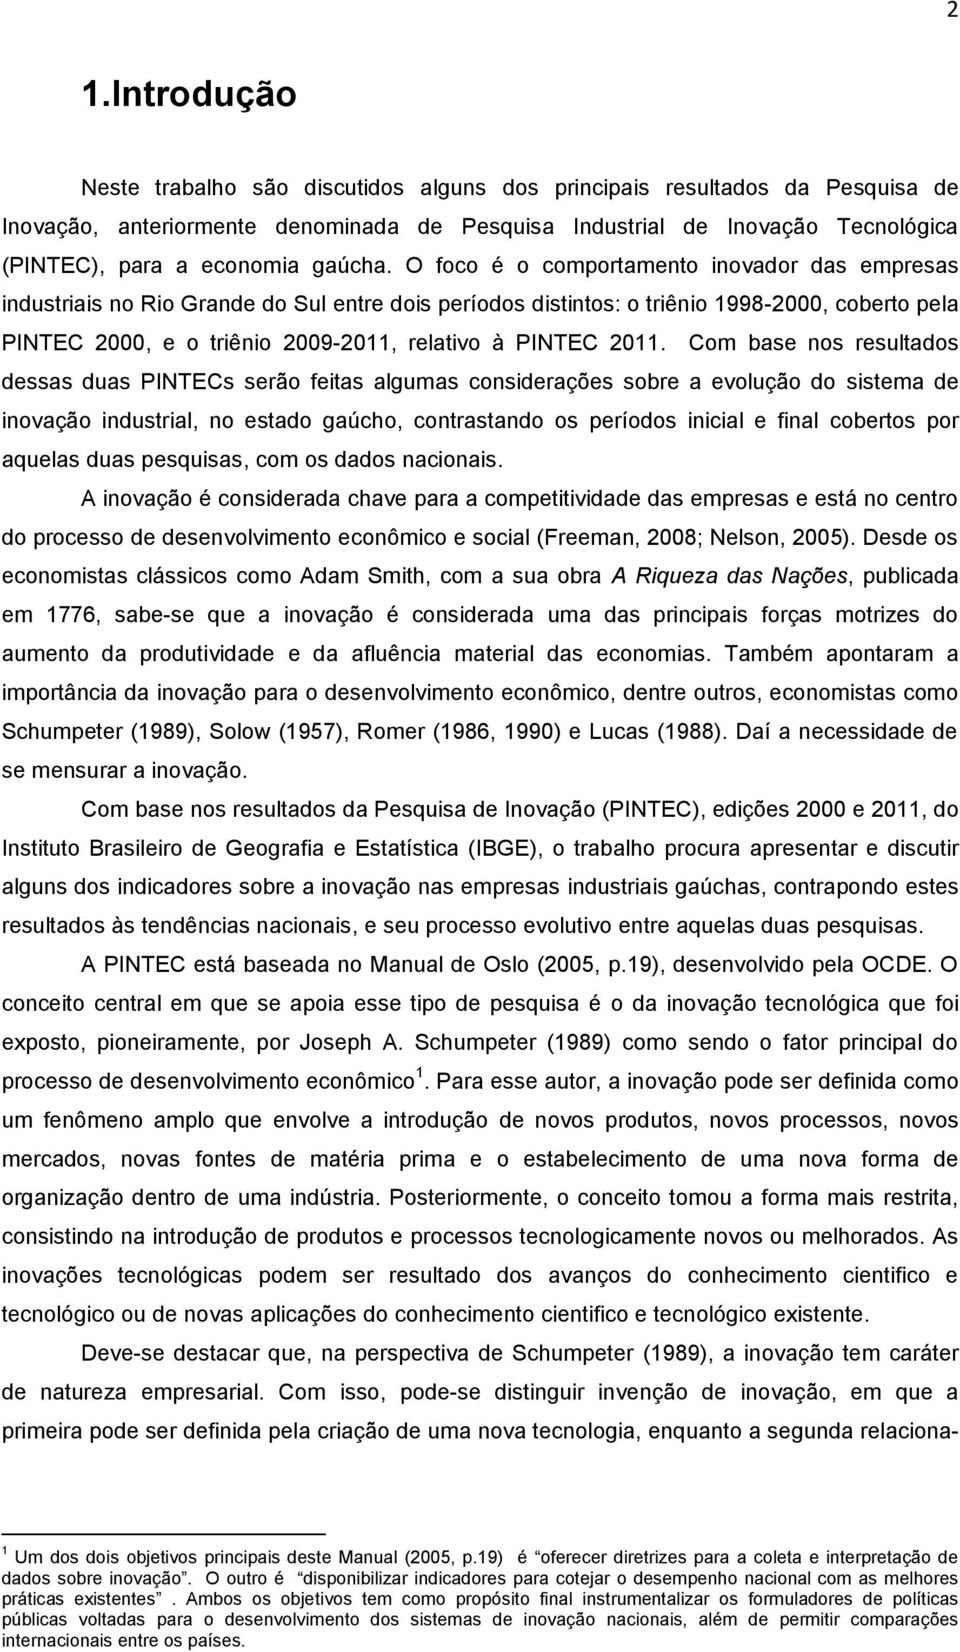 O foco é o comportamento inovador das empresas industriais no Rio Grande do Sul entre dois períodos distintos: o triênio 1998-2000, coberto pela PINTEC 2000, e o triênio 2009-2011, relativo à PINTEC